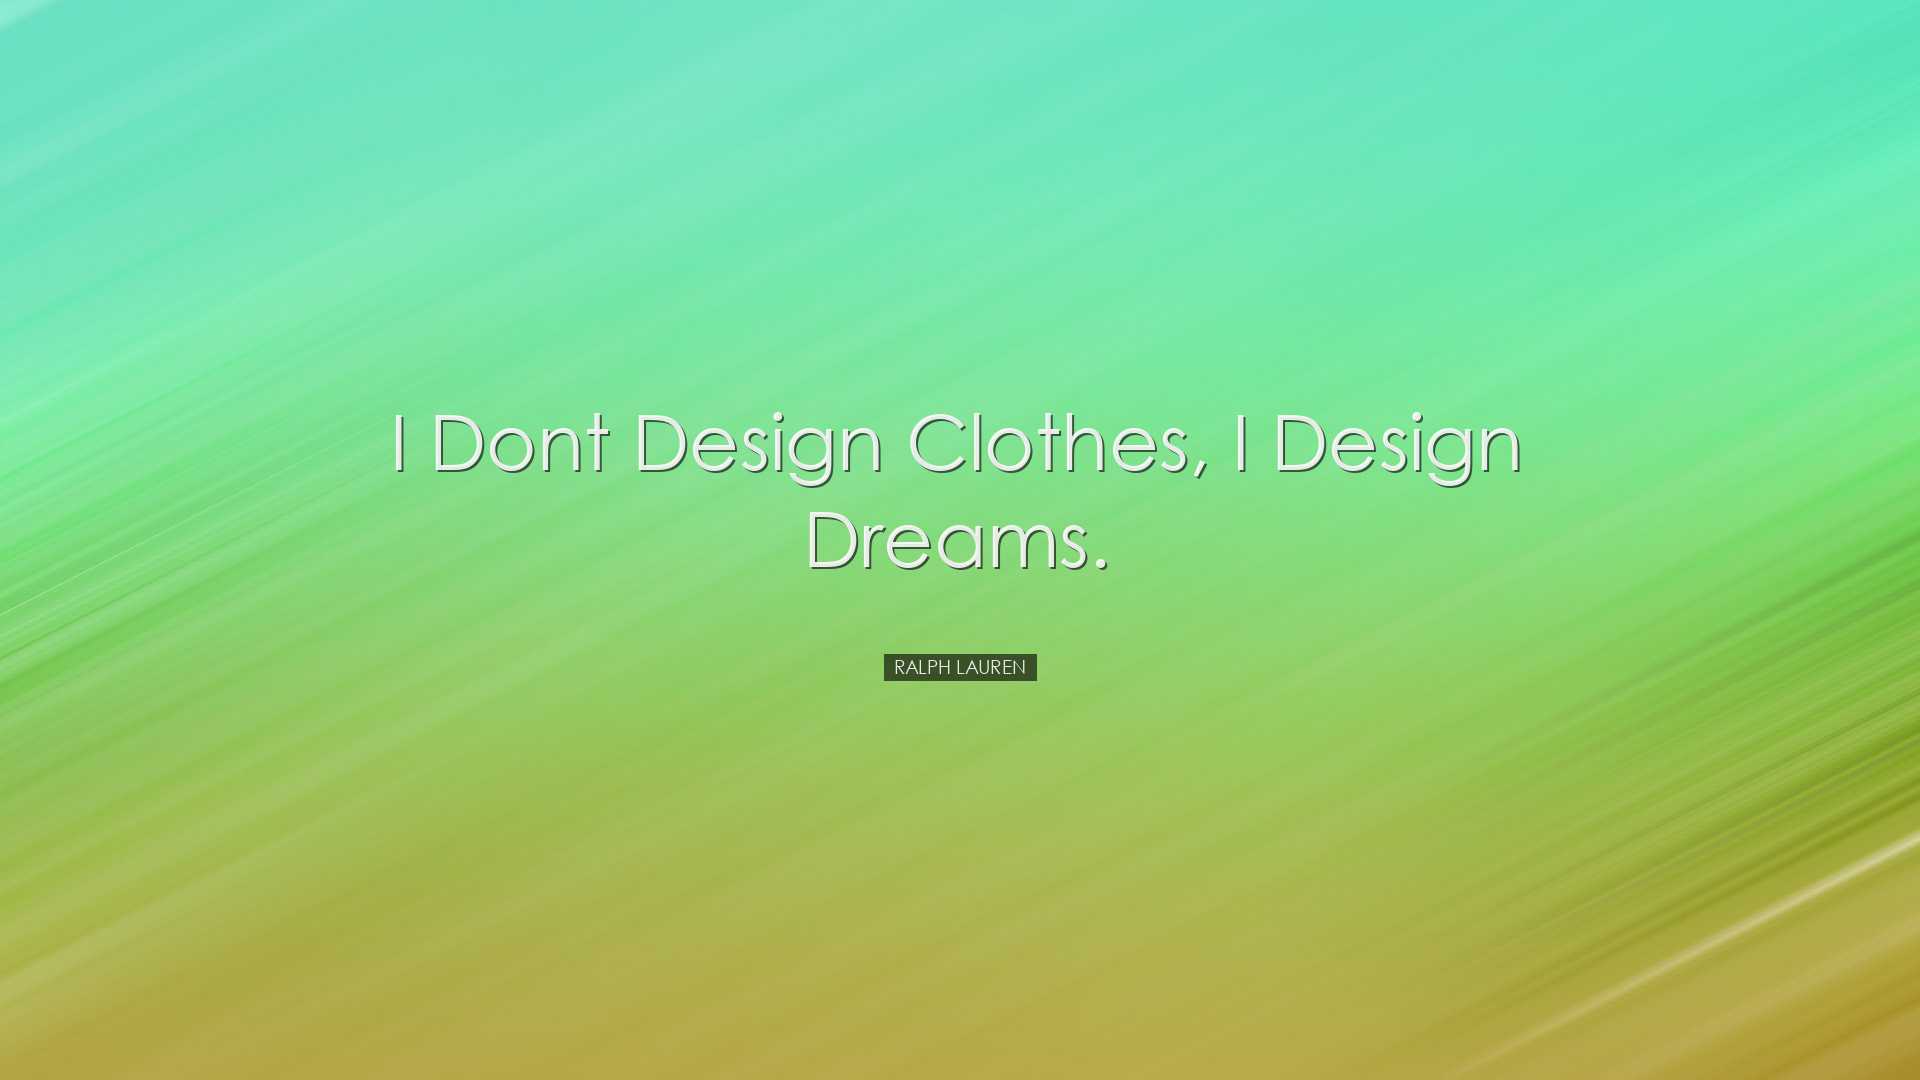 I dont design clothes, I design dreams. - Ralph Lauren